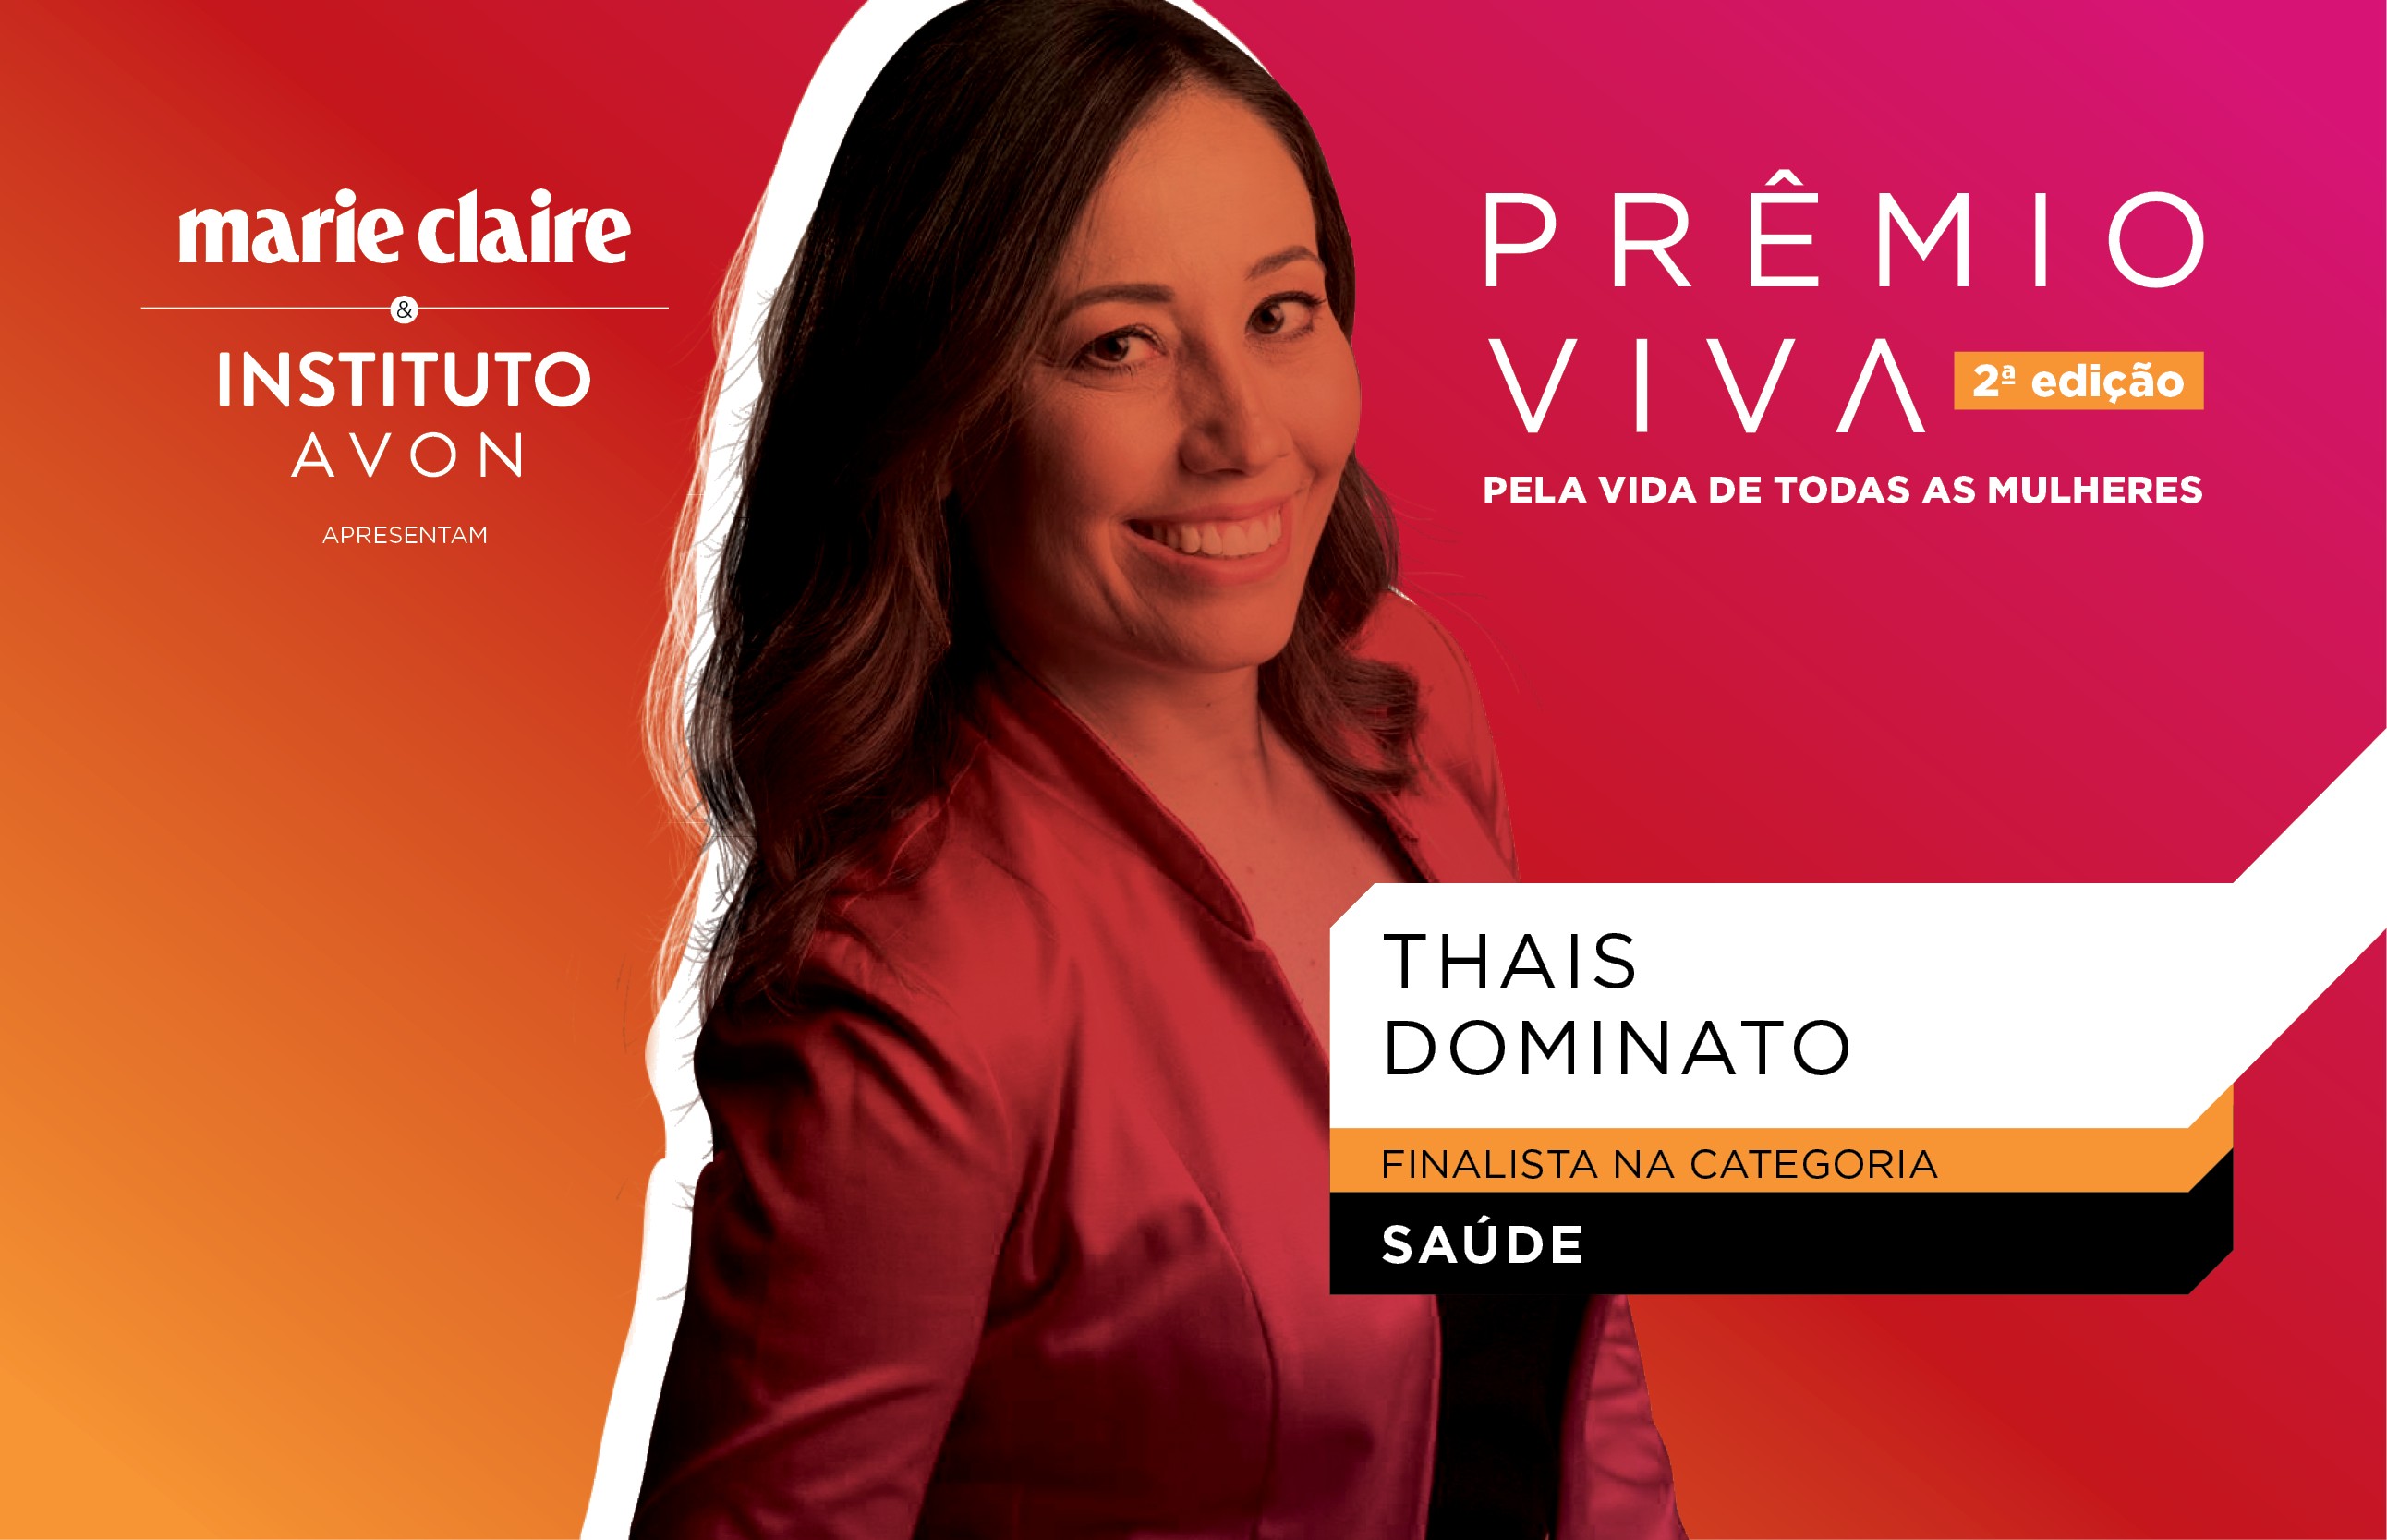 Thaís Dominato da SIlva Teixeira, finalista na categoria Saúde (Foto: Marie Claire)